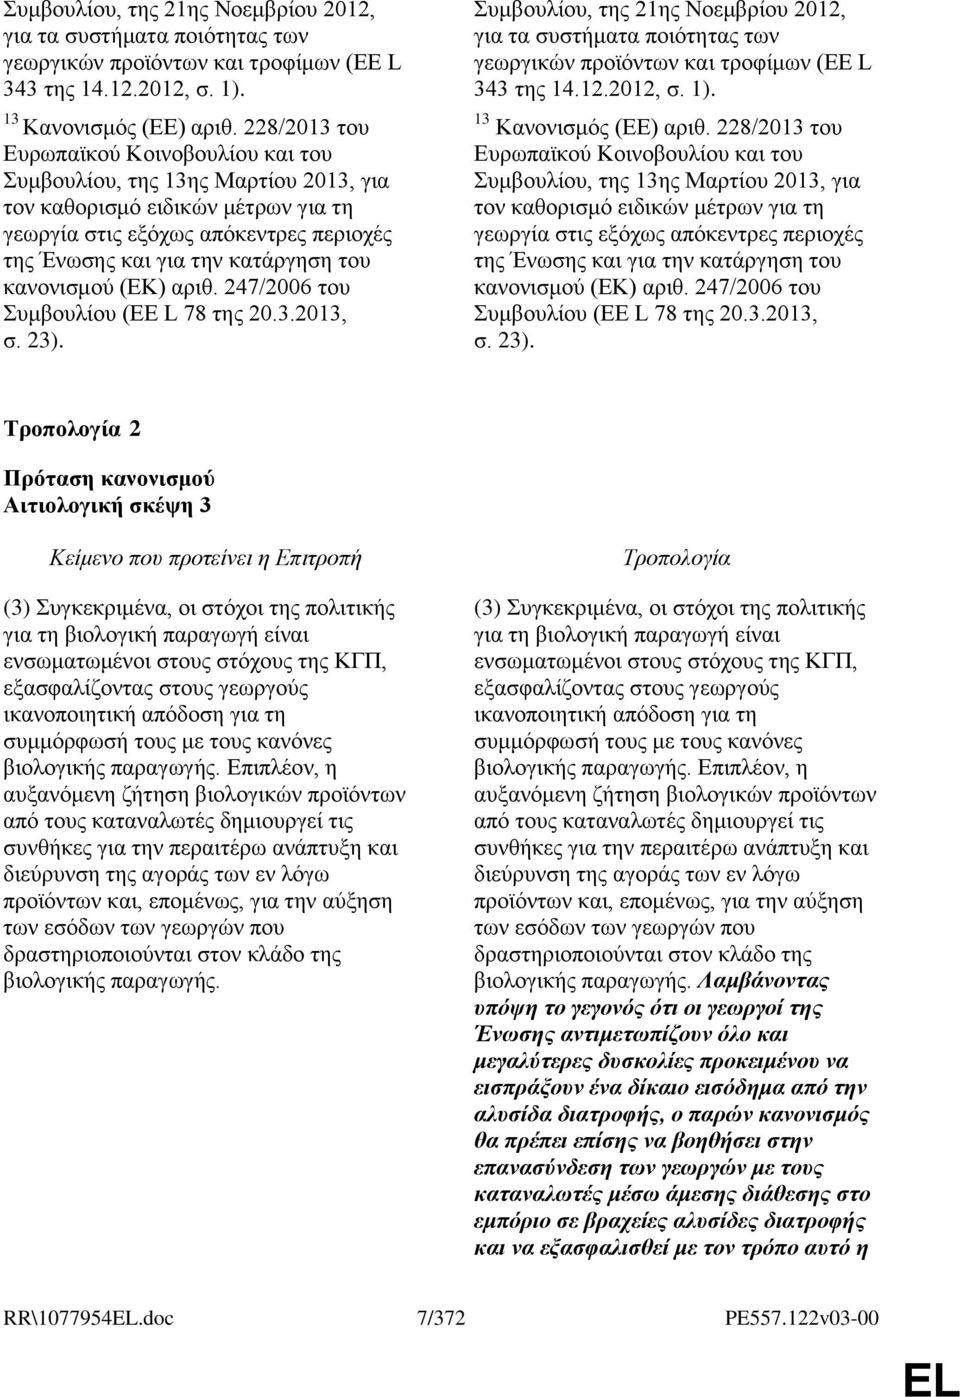 θαλνληζκνχ (ΔΚ) αξηζ. 247/2006 ηνπ πκβνπιίνπ (ΔΔ L 78 ηεο 20.3.2013, ζ. 23).